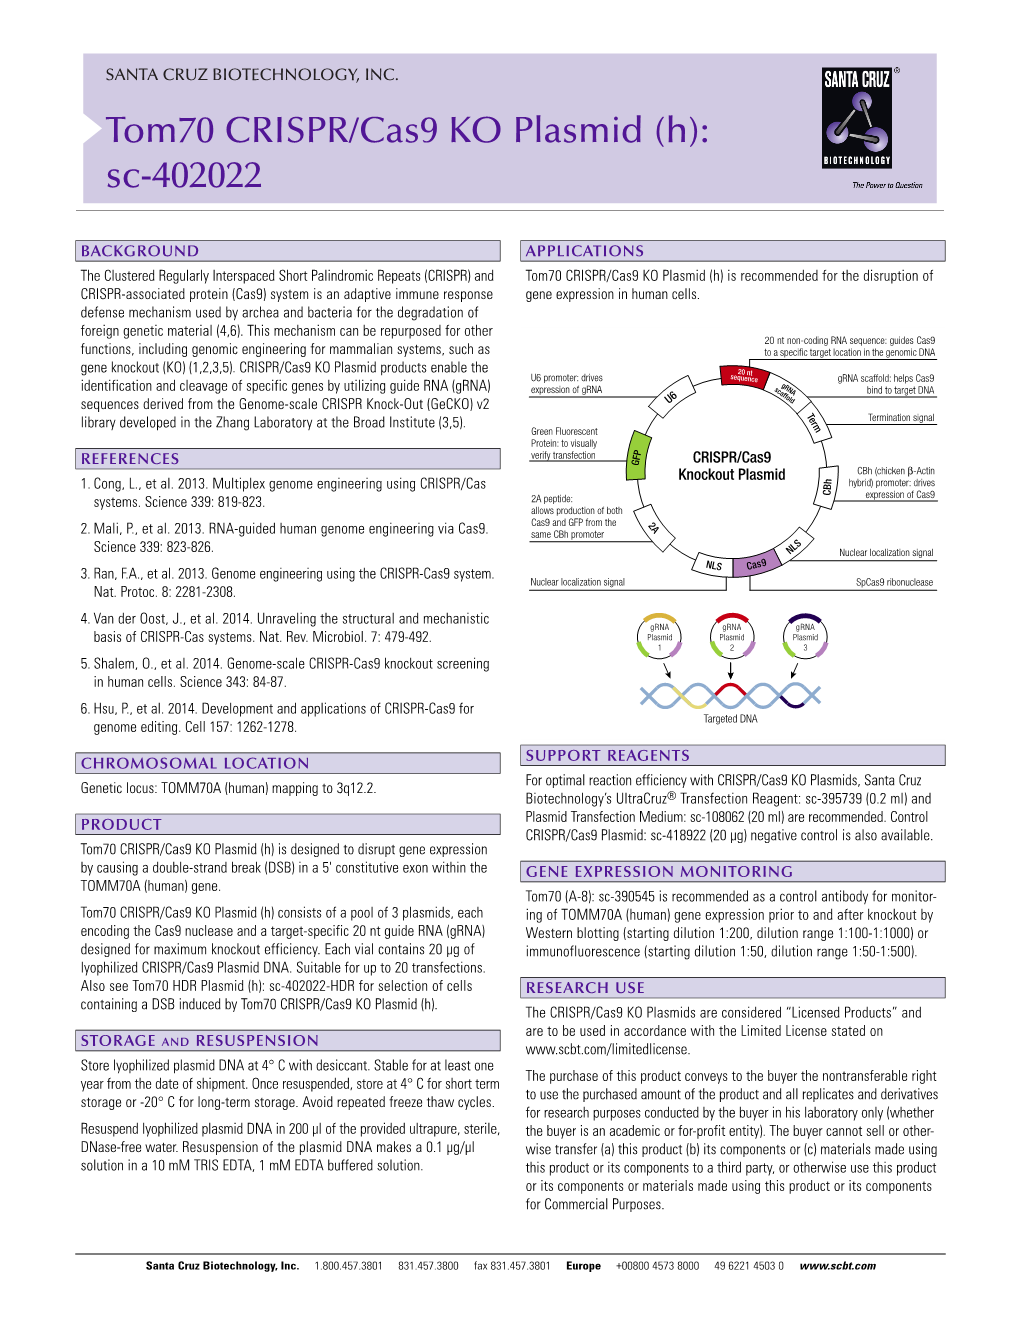 Tom70 CRISPR/Cas9 KO Plasmid (H): Sc-402022